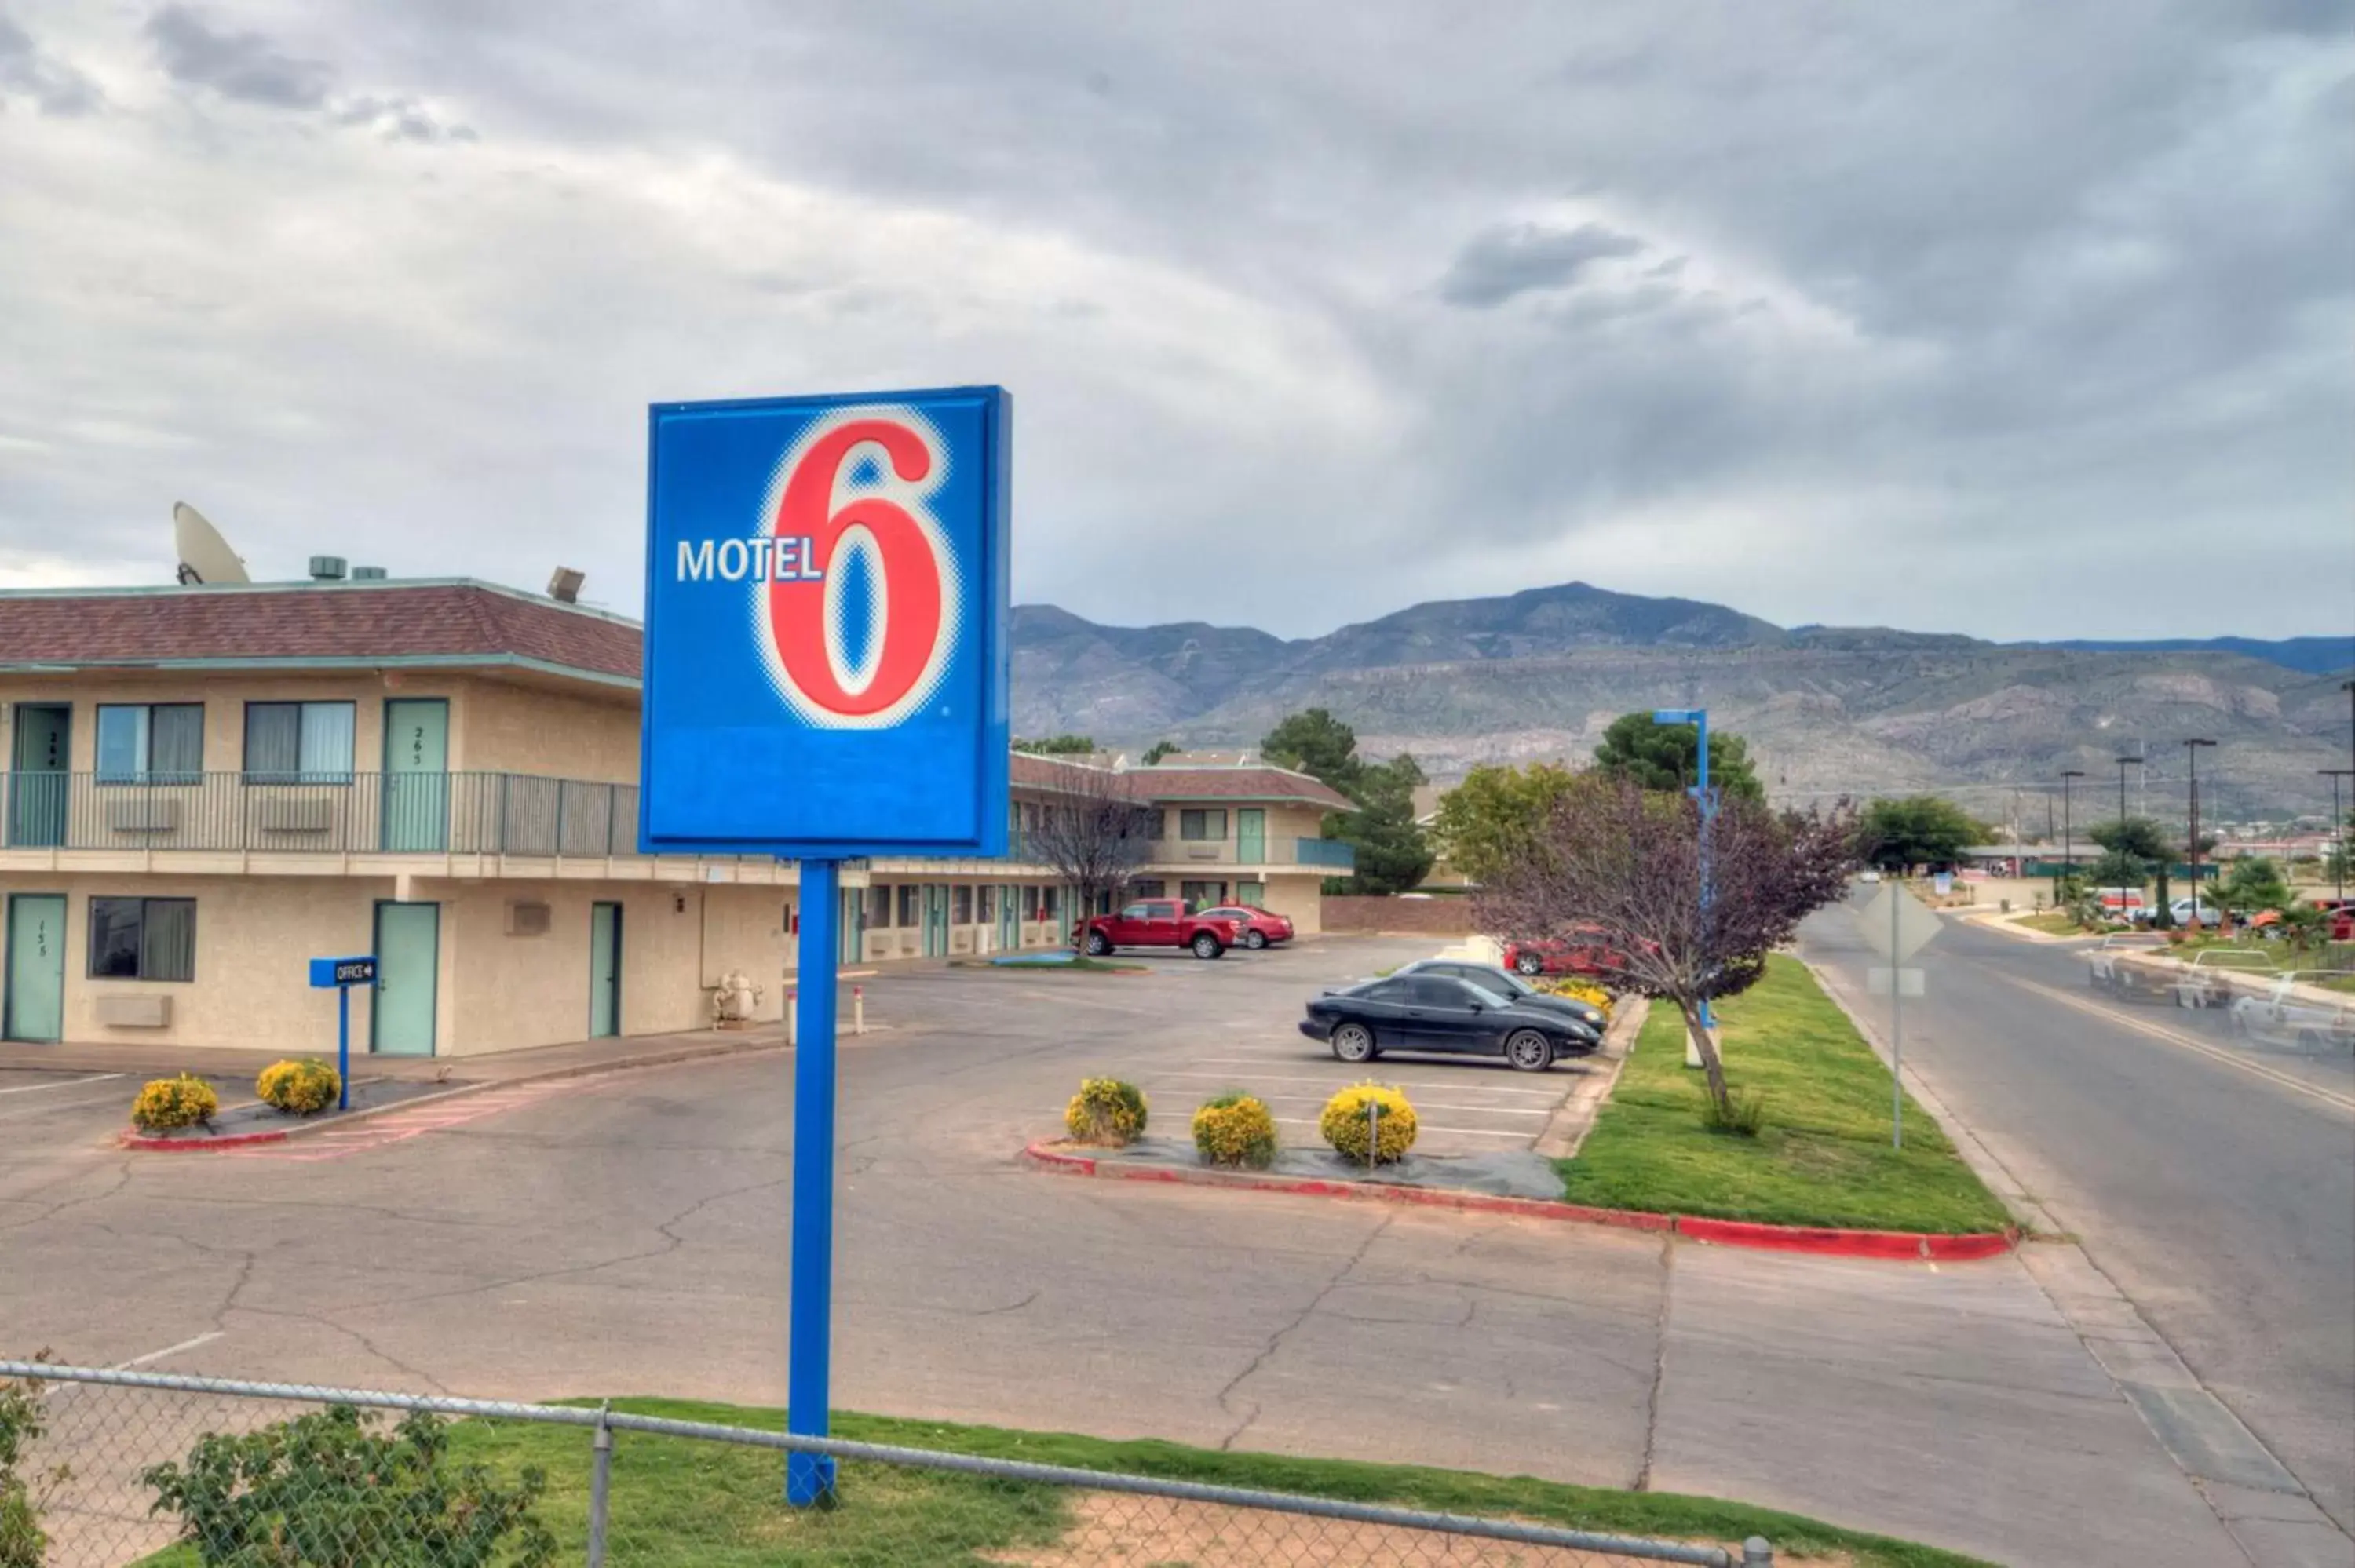 Property building in Motel 6-Alamogordo, NM